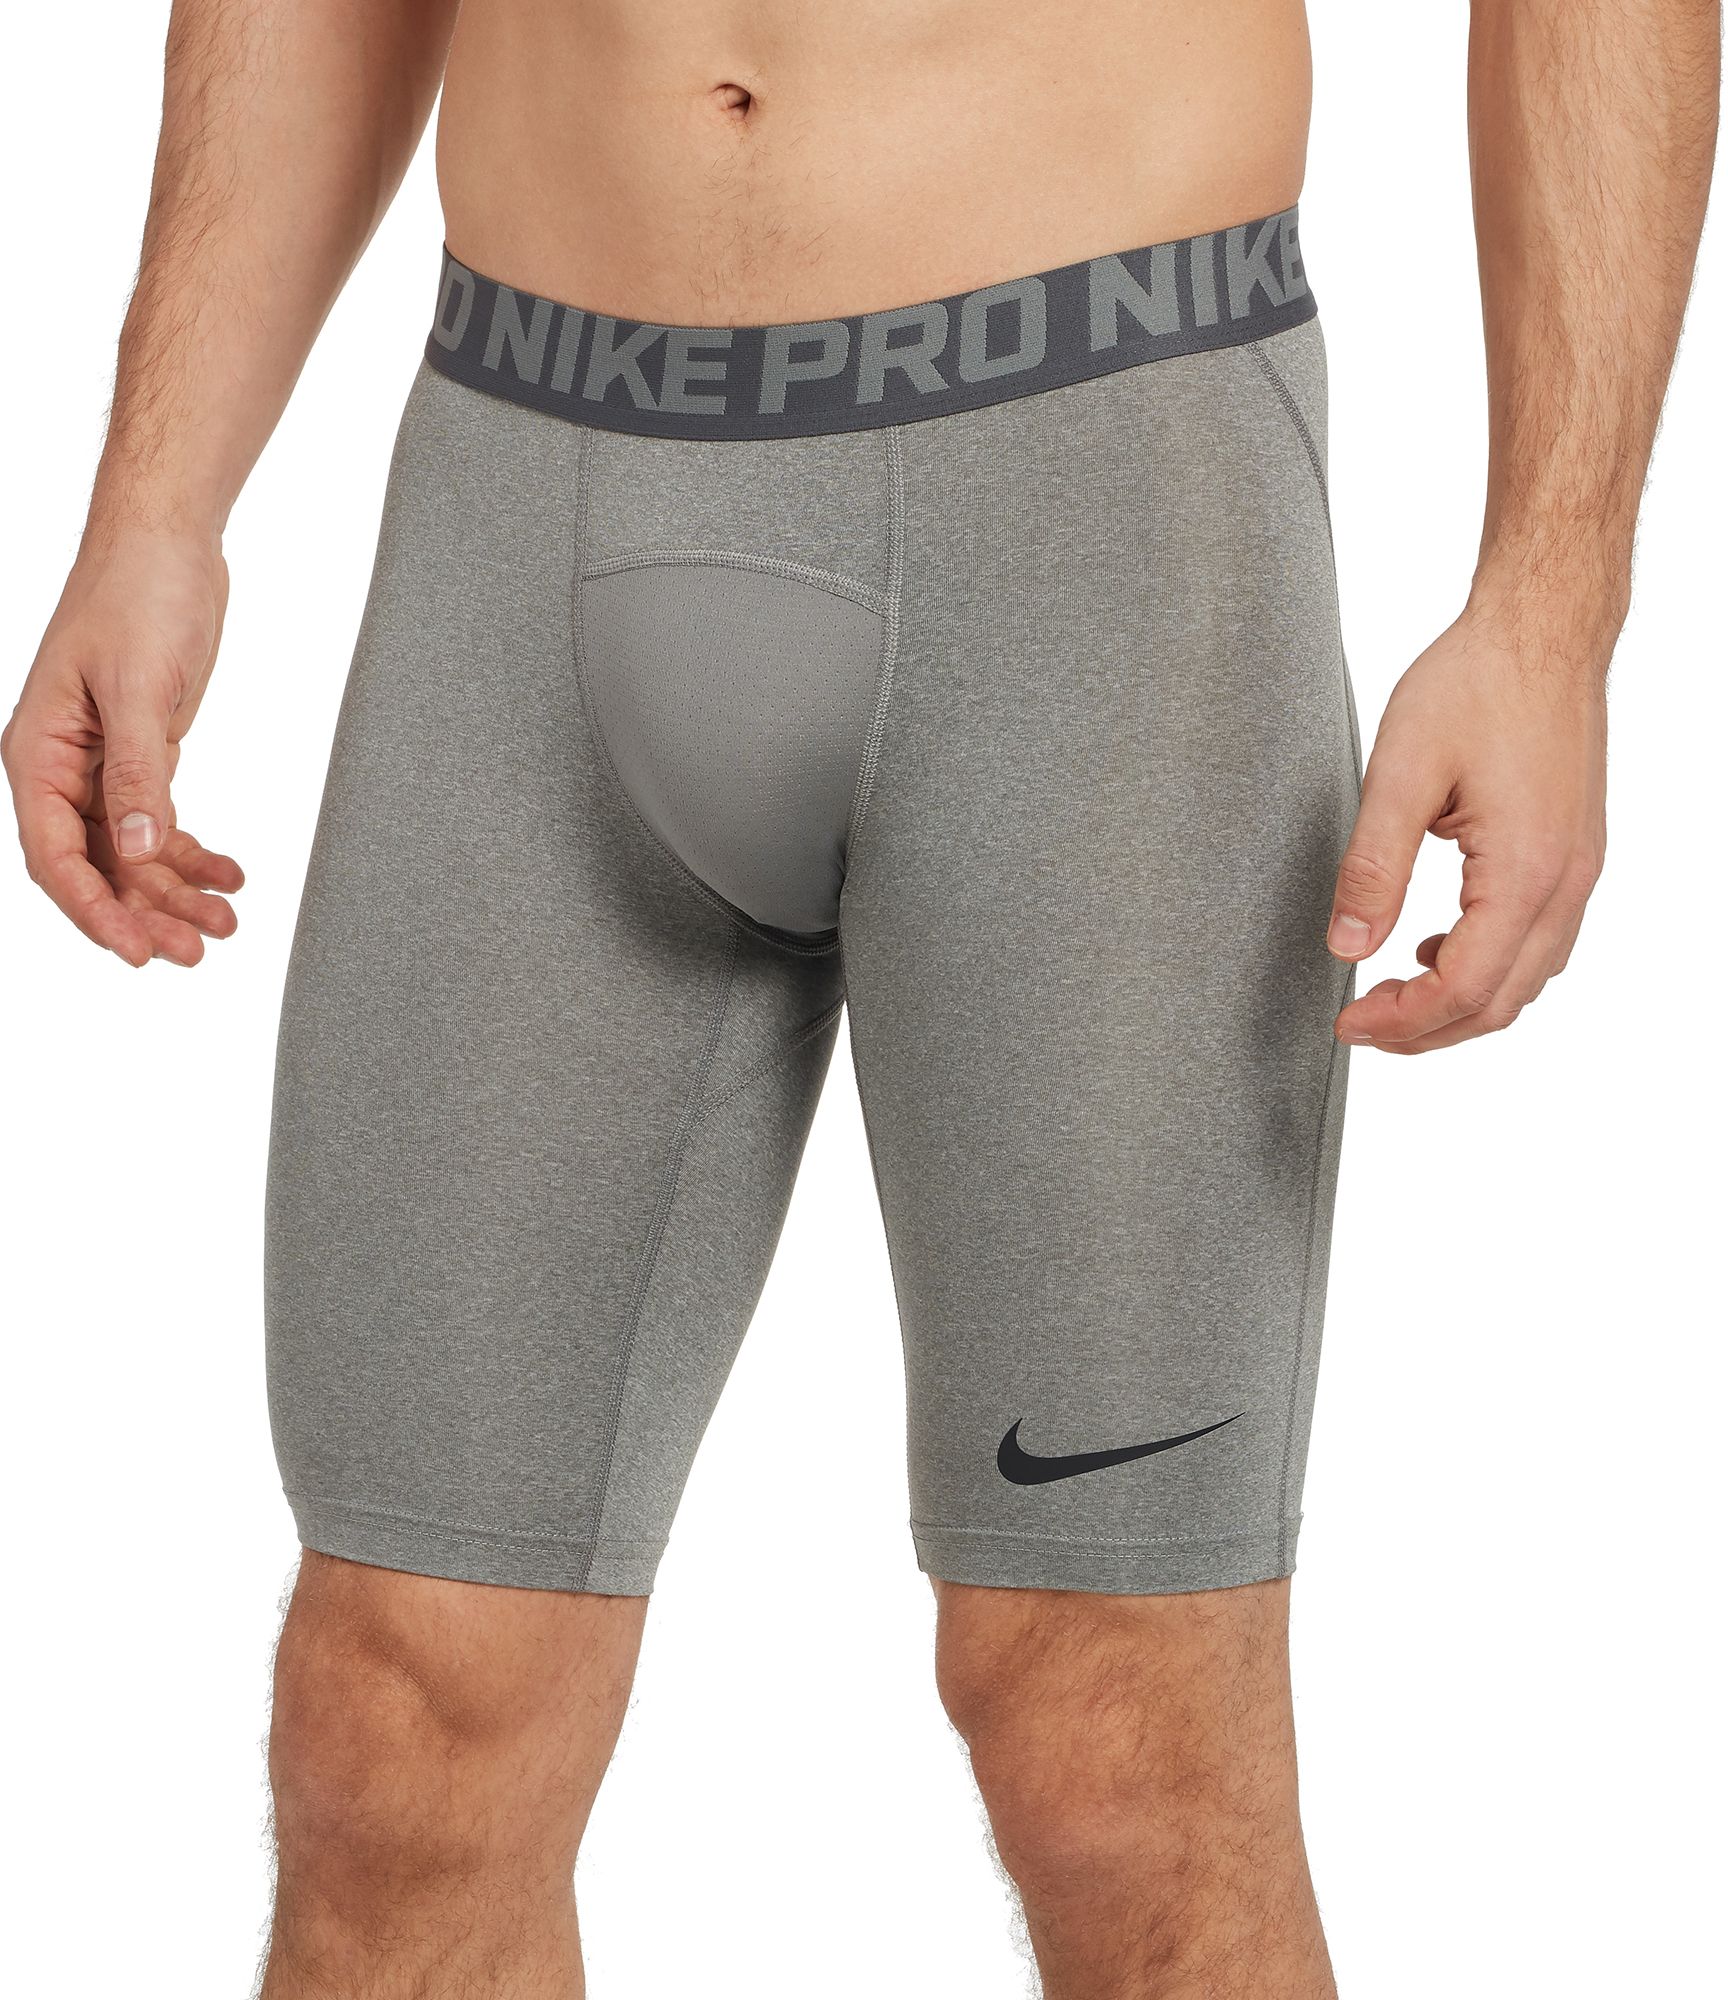 nike underwear long